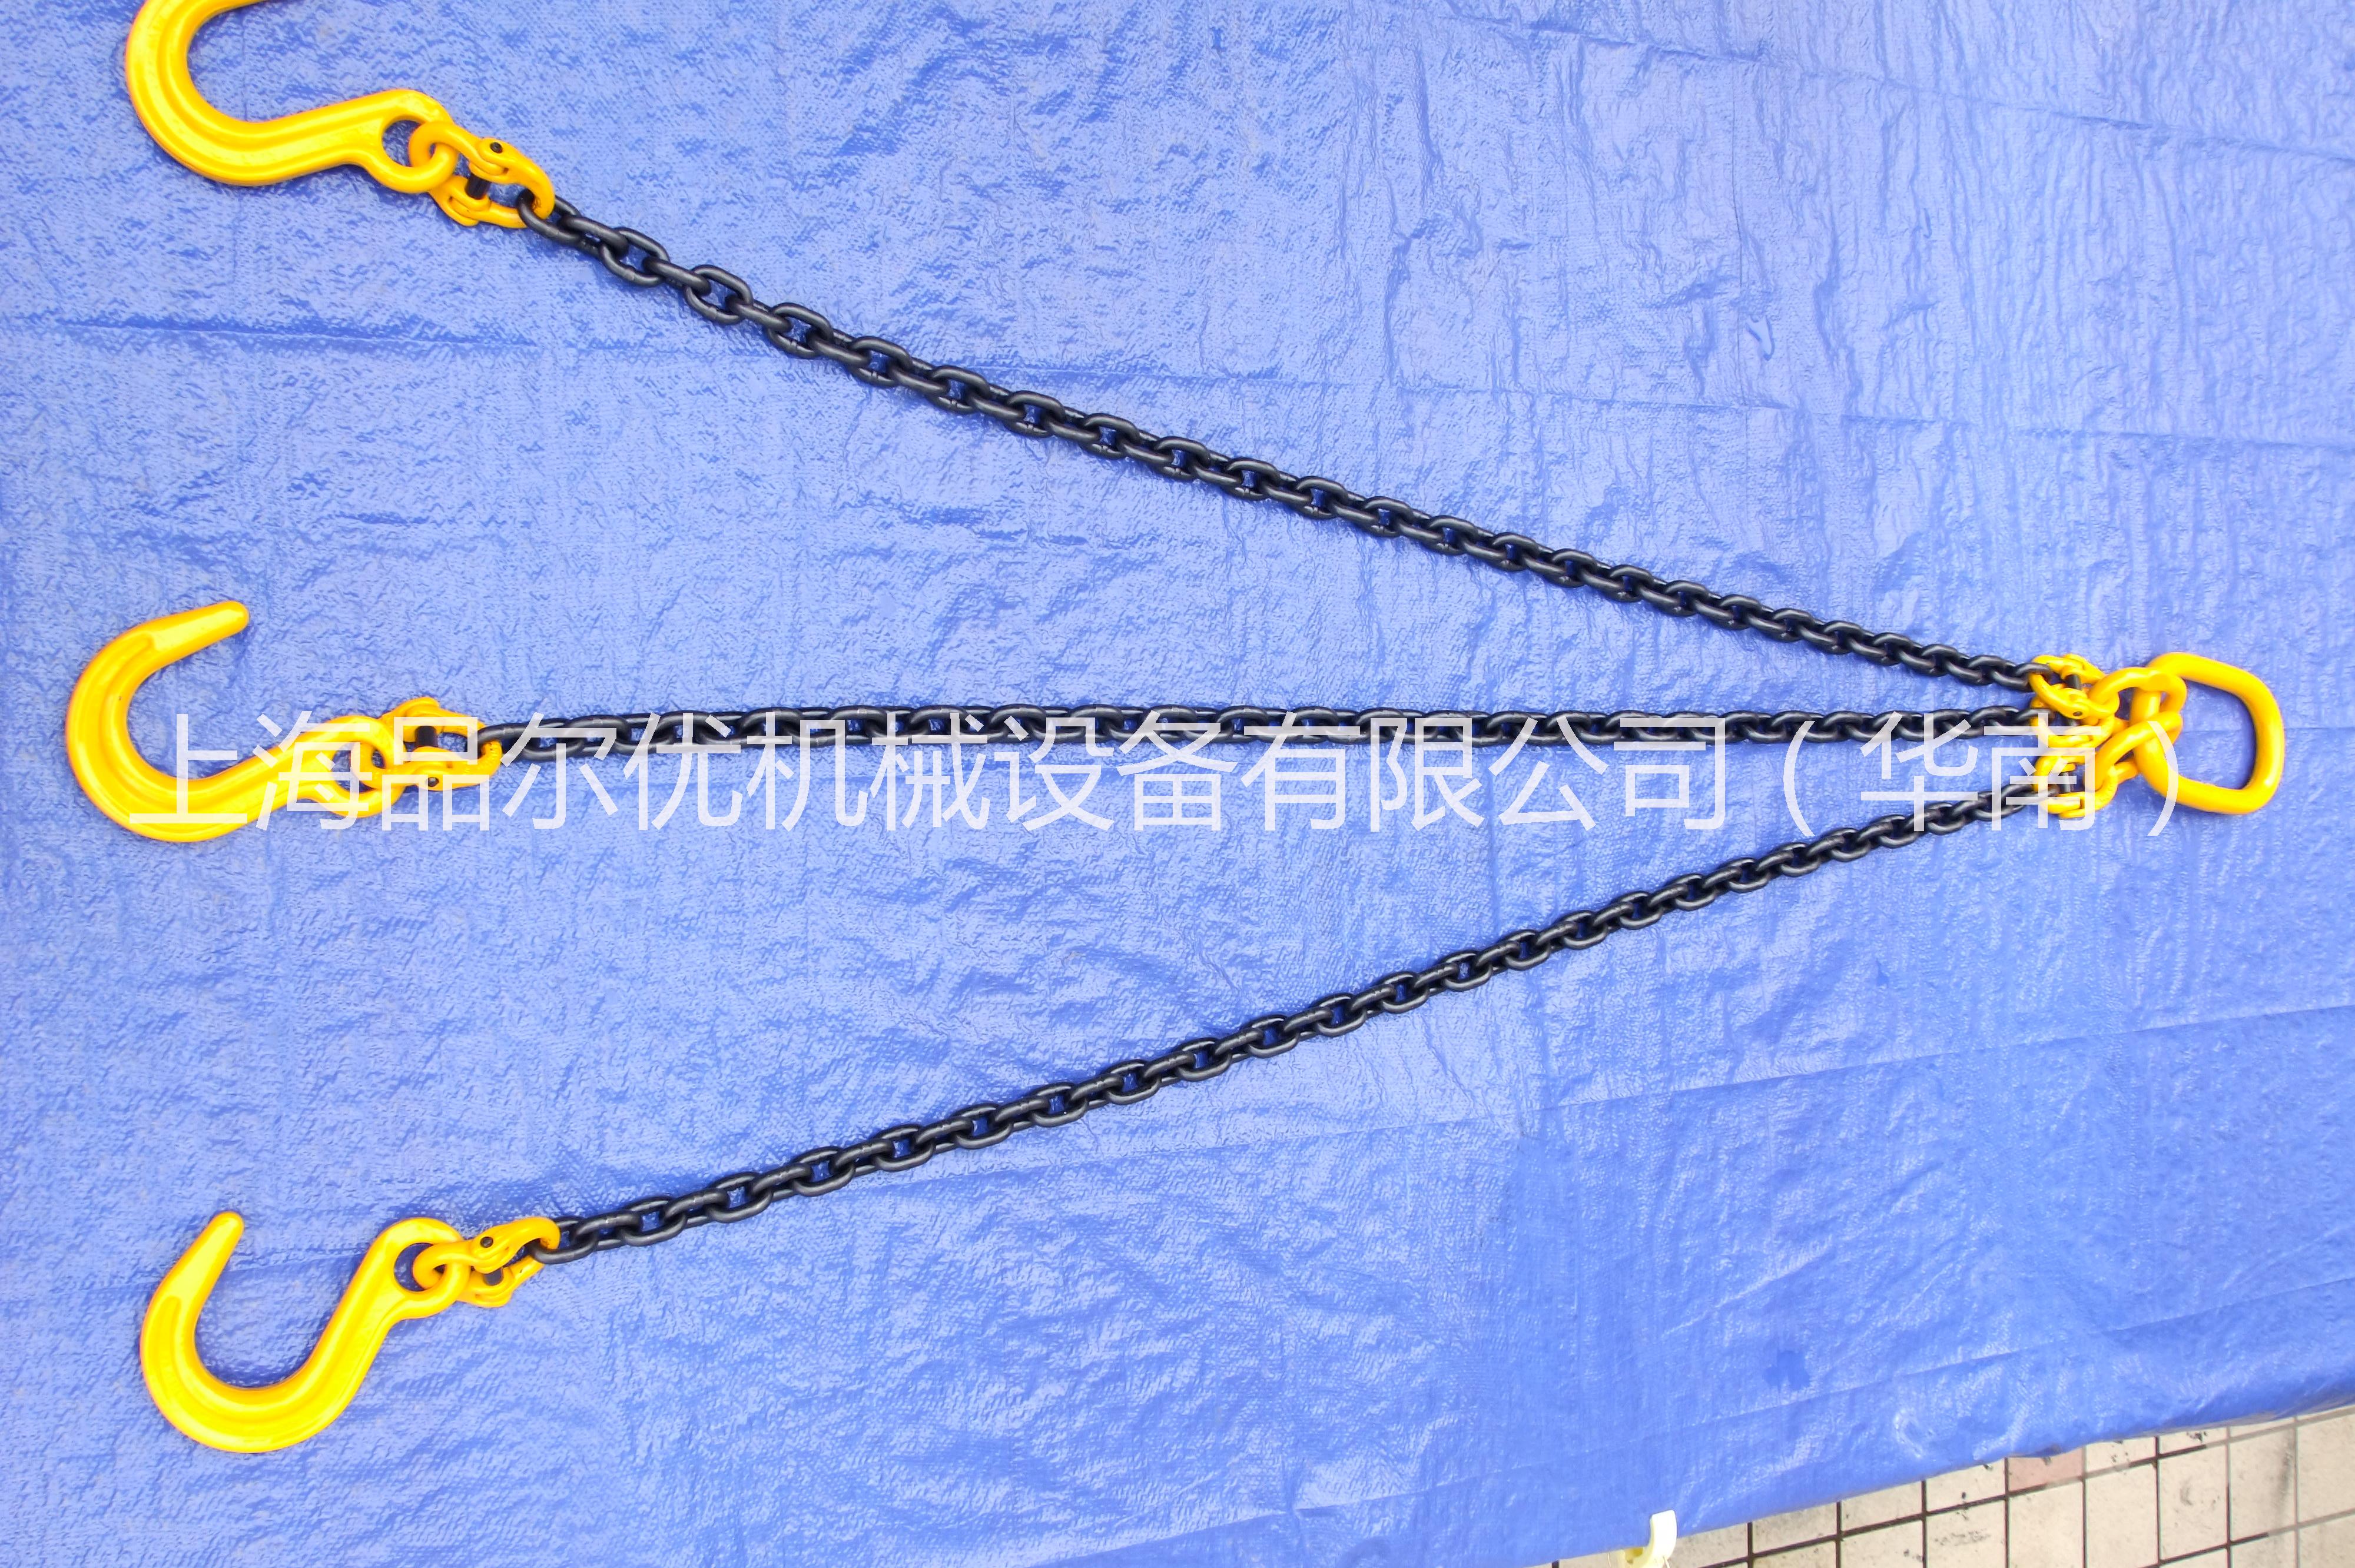 供应用于起重的上海品尔优单腿链条索具 链条索具 链条索具咨询13061916302,，链条索具报价，链条索具规格图片